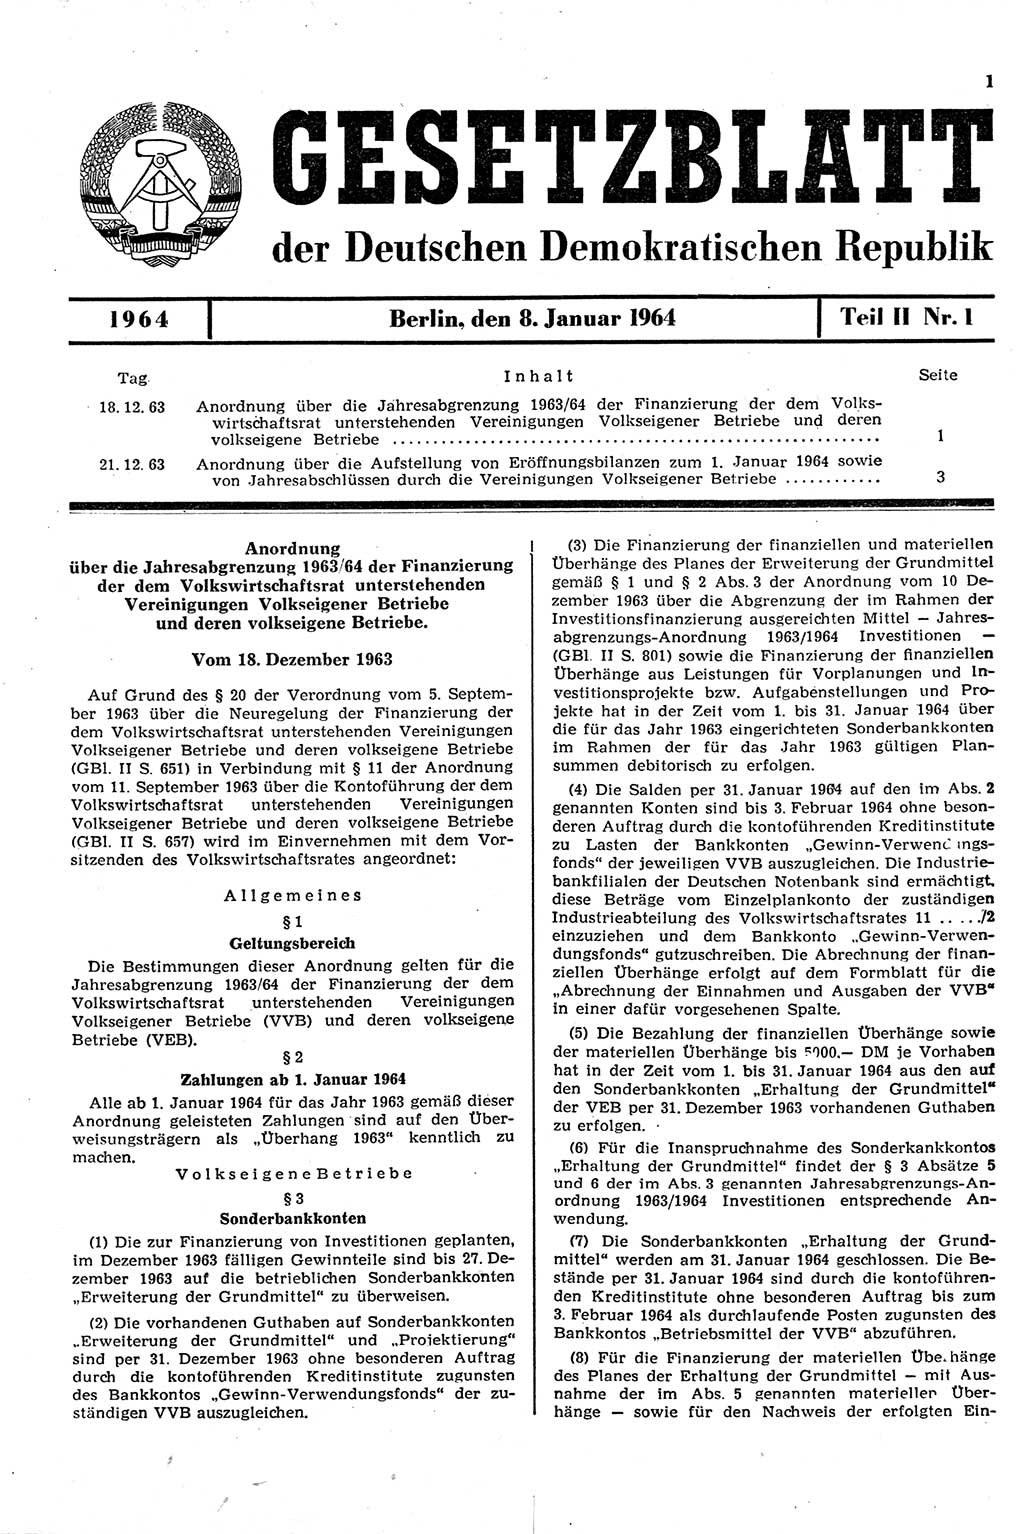 Gesetzblatt (GBl.) der Deutschen Demokratischen Republik (DDR) Teil ⅠⅠ 1964, Seite 1 (GBl. DDR ⅠⅠ 1964, S. 1)